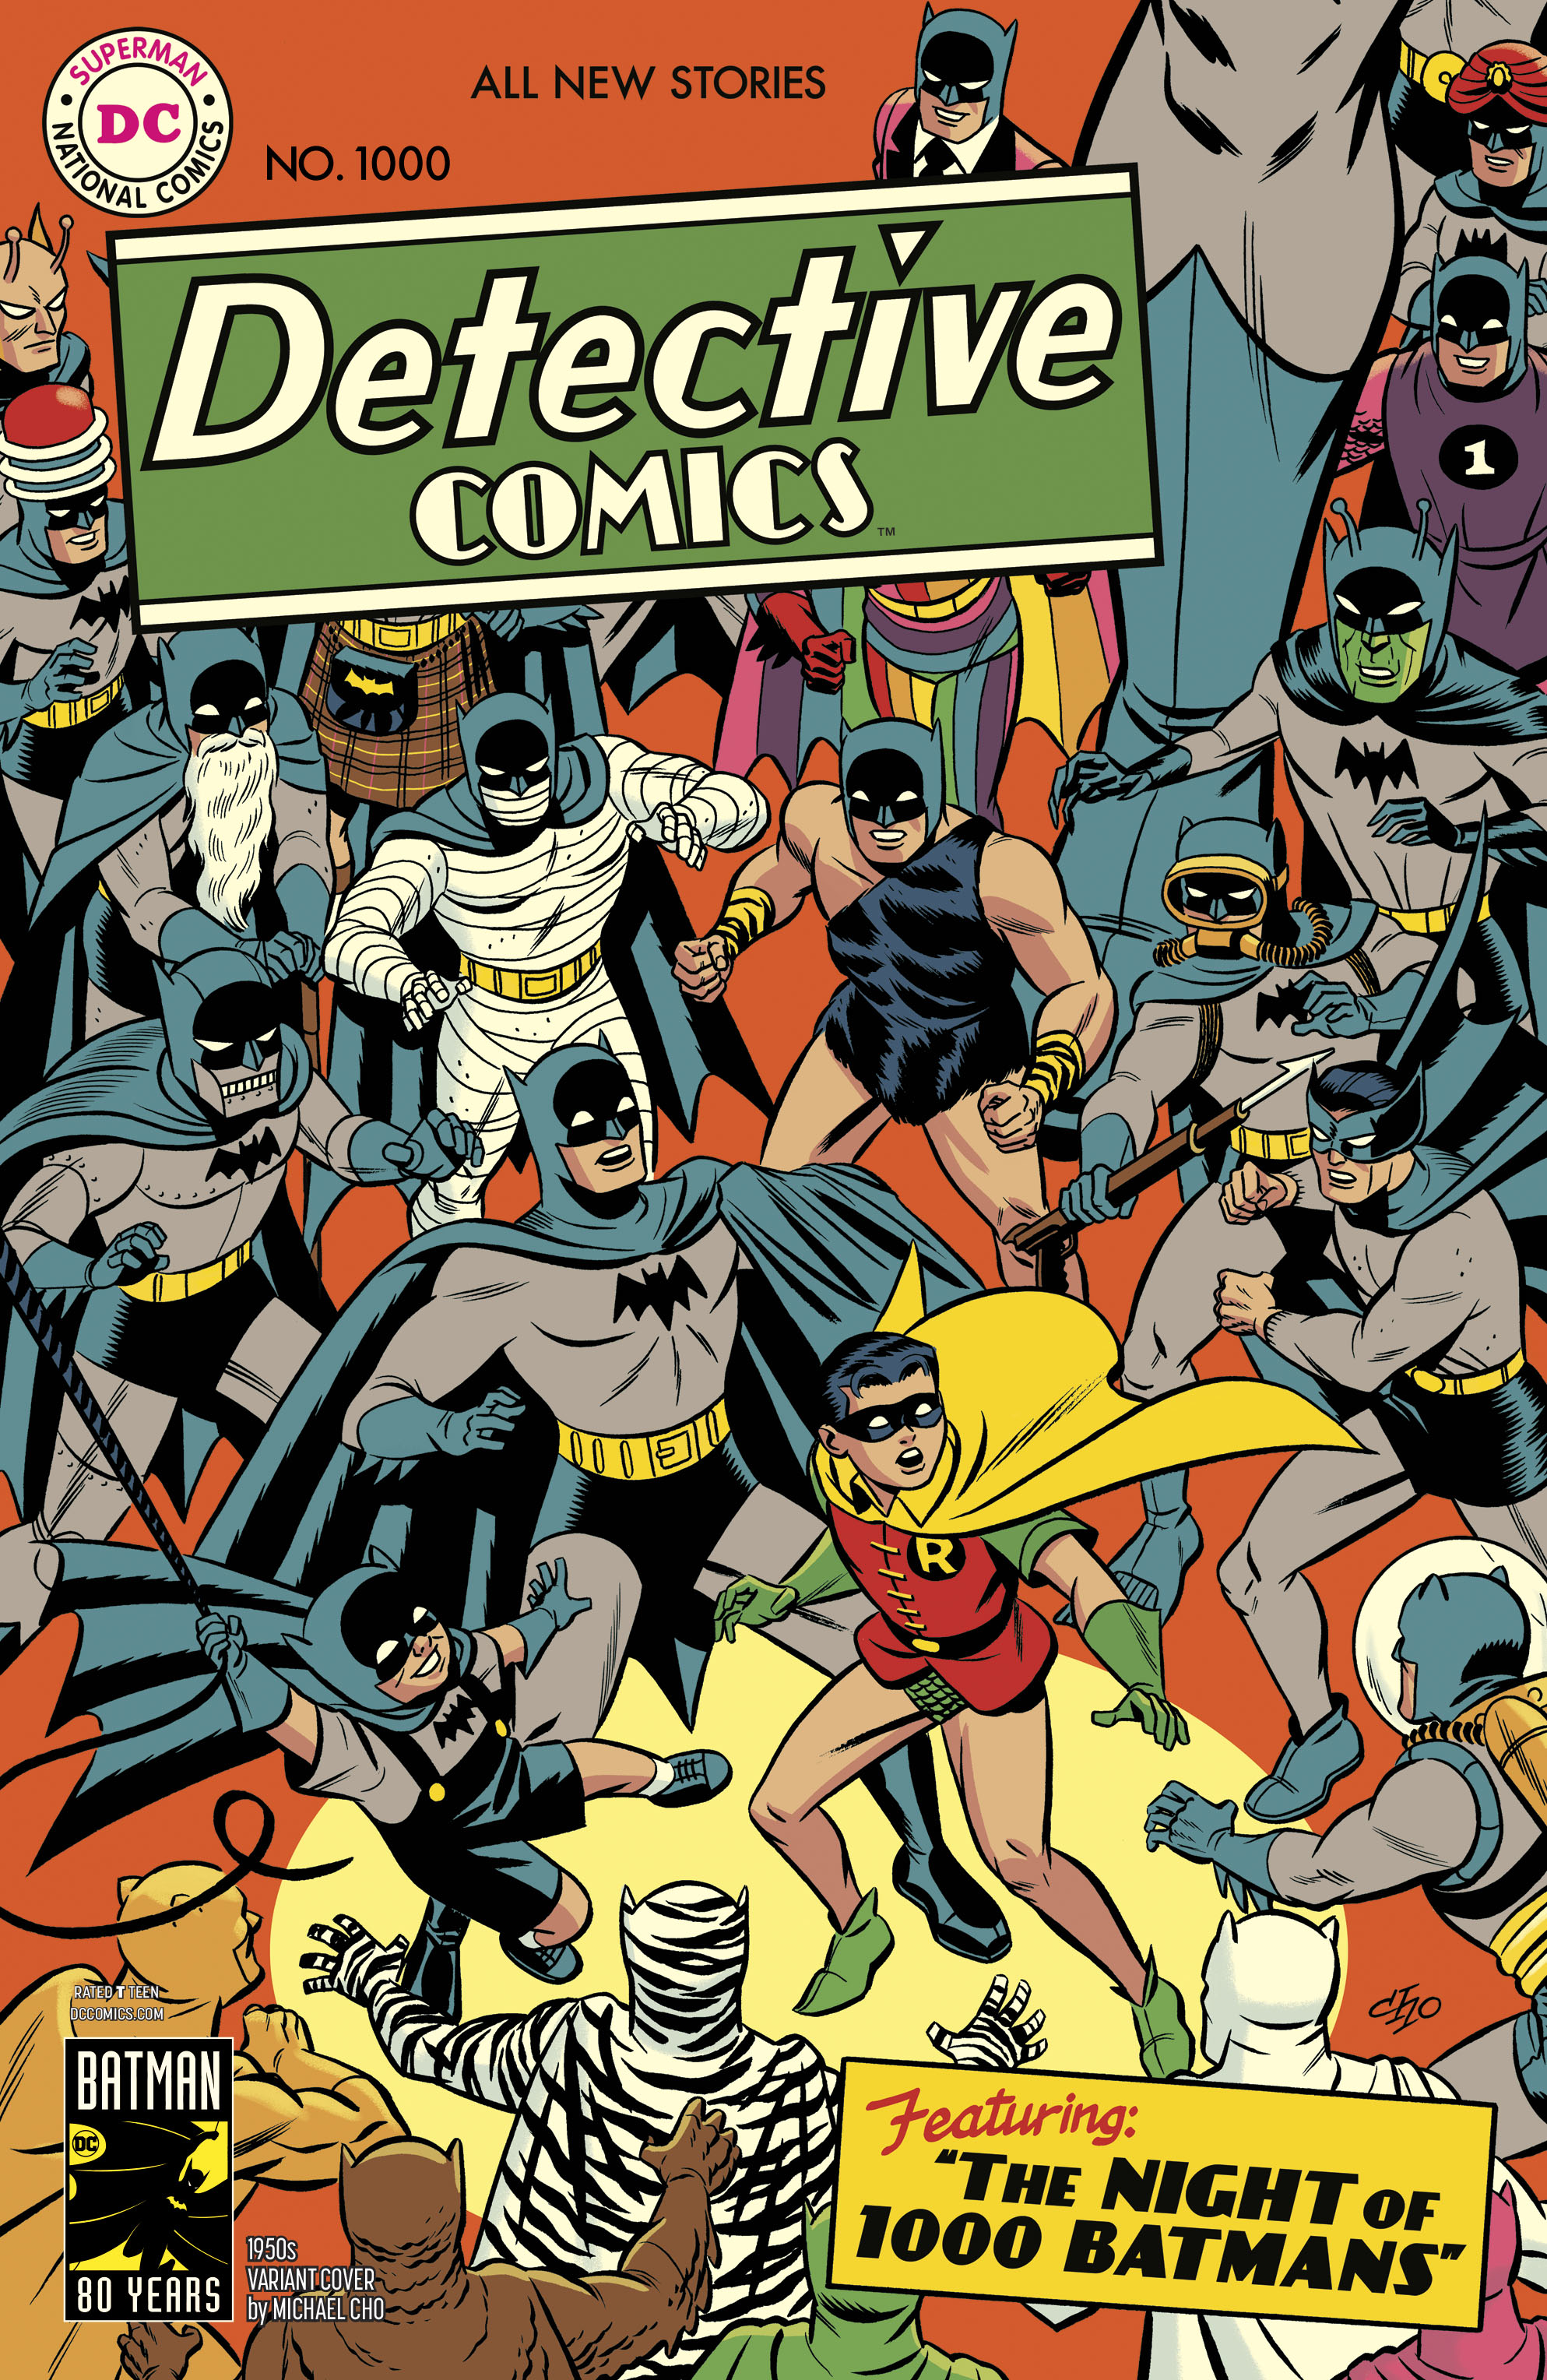 Detective Comics no. 1000 (1950 Variant) (1937 Series)